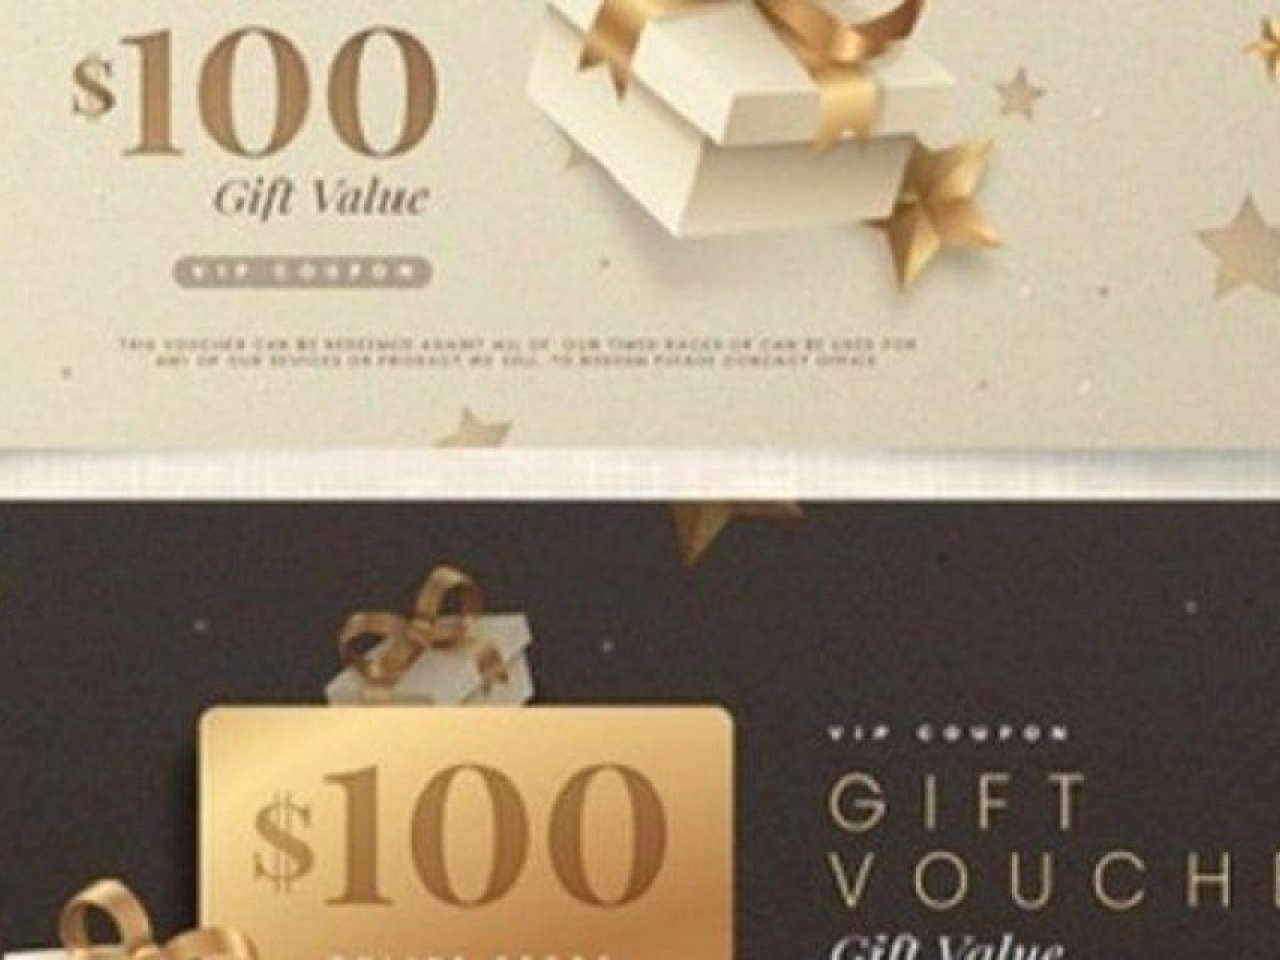 golden-gift-voucher-template-pack-52683-53664-2-jpg-41e6843cd376bb30-jpg-4bd7bd7227a3138b